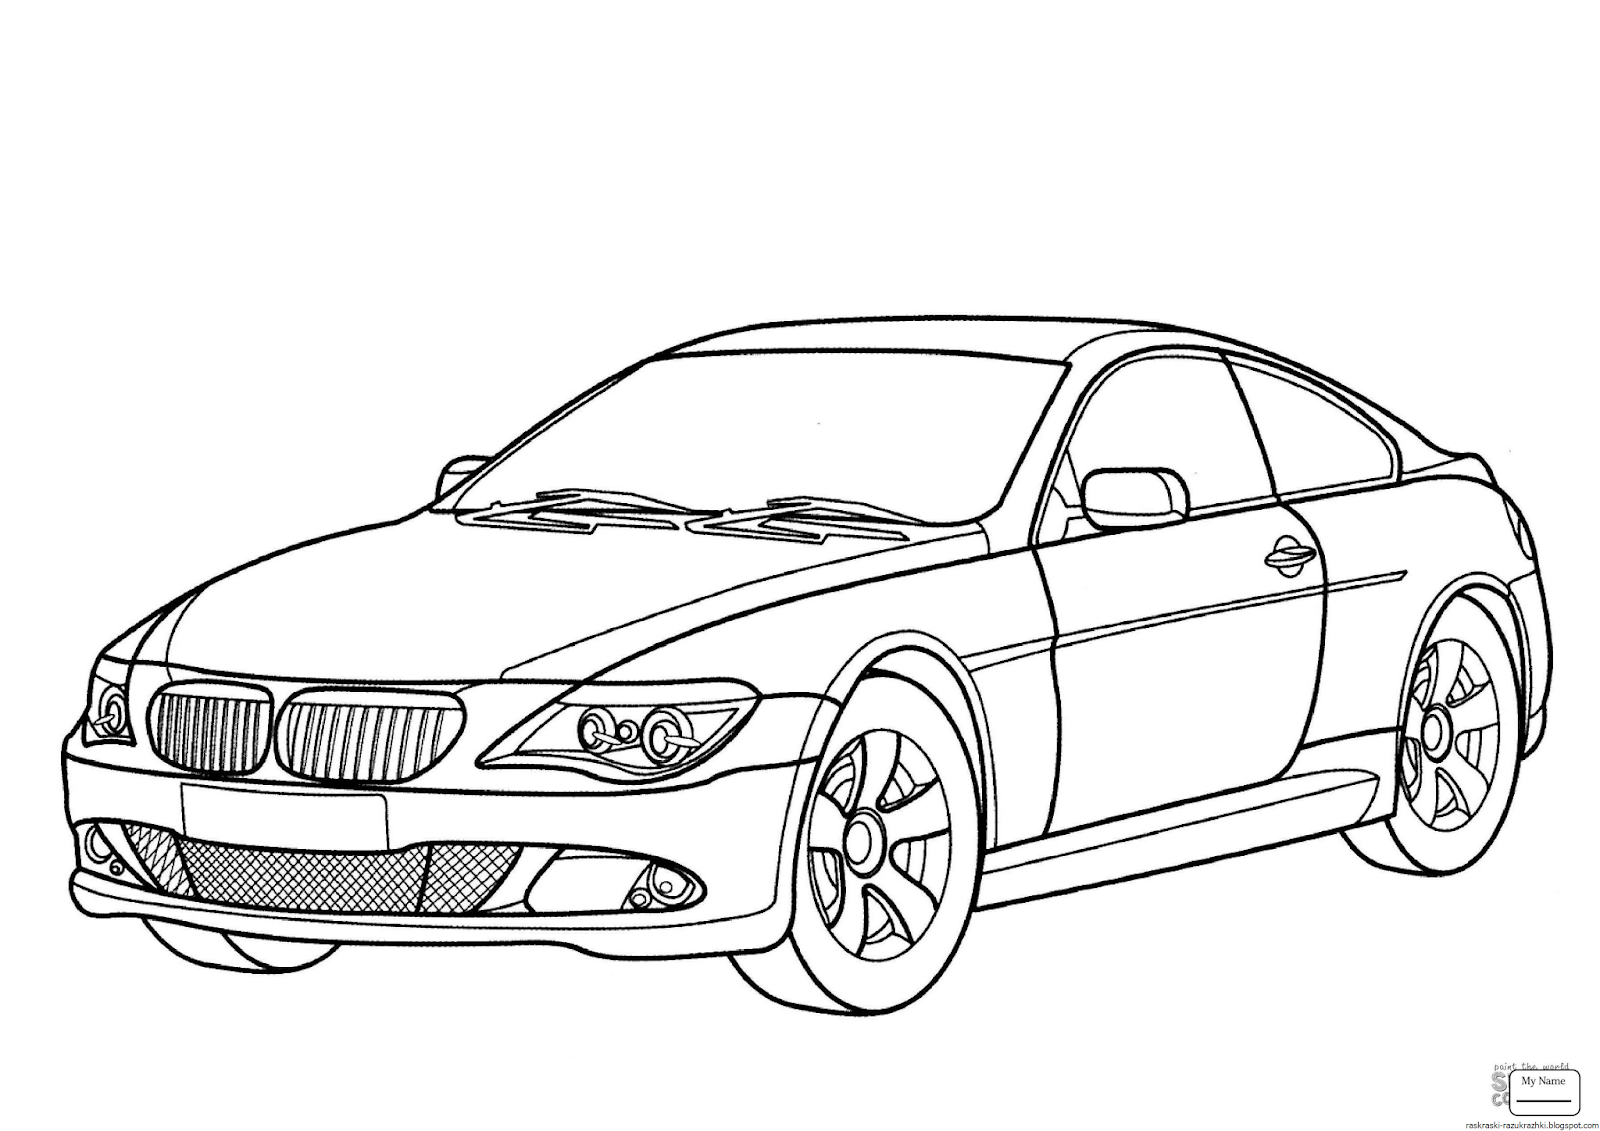 Рисунки для мальчиков 8. BMW m6 раскраска. Раскраски машины БМВ х6. Раскраски для мальчиков 6-7 лет ВМВ машины. Машина раскраска для детей.